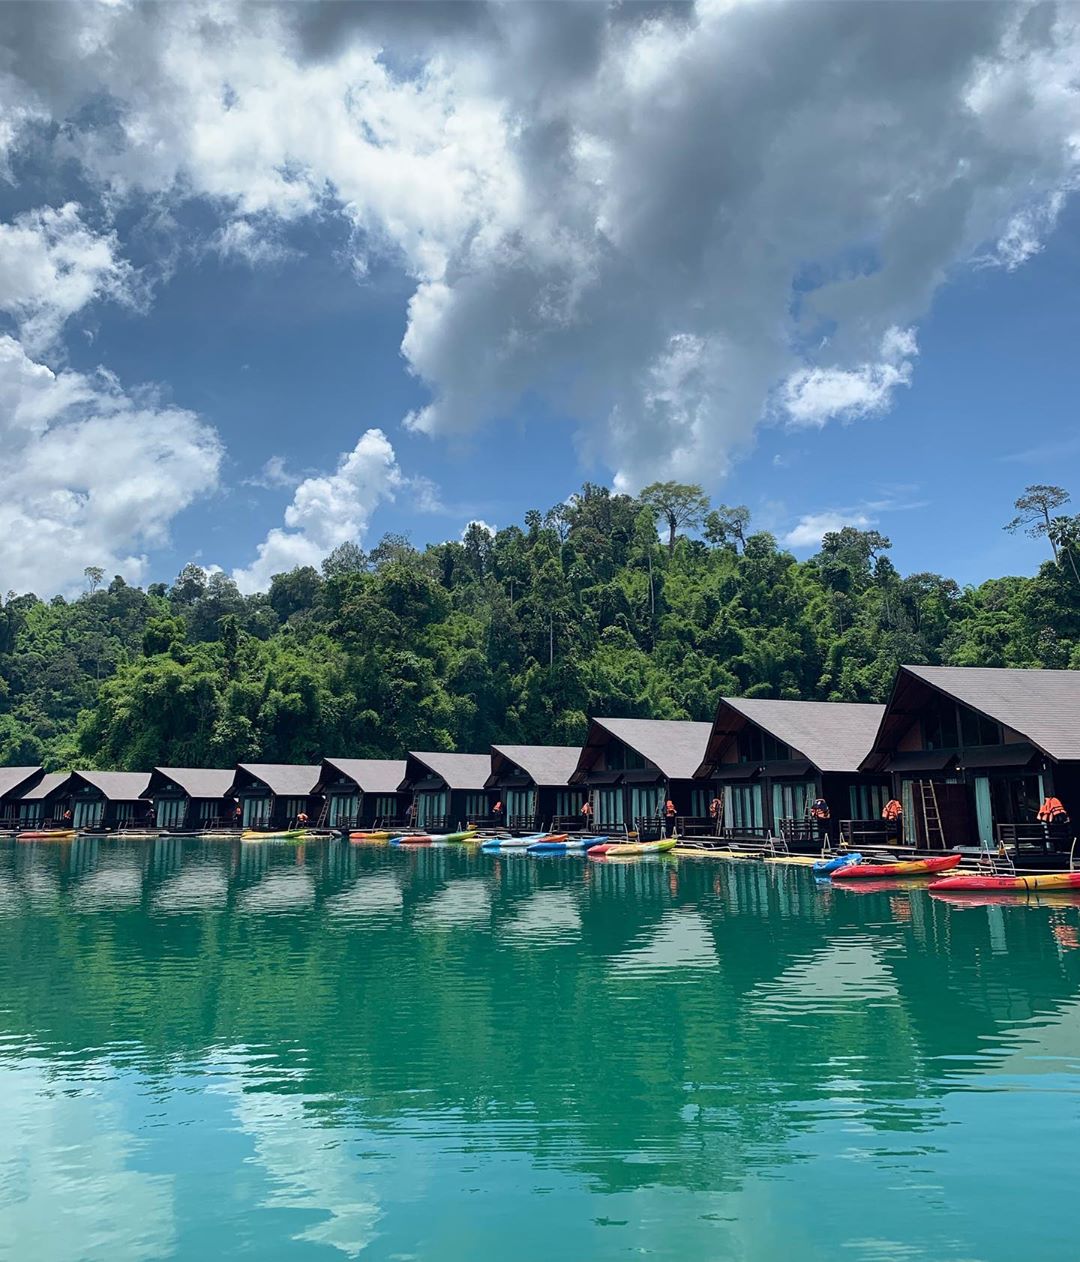 Water Villas In Thailand